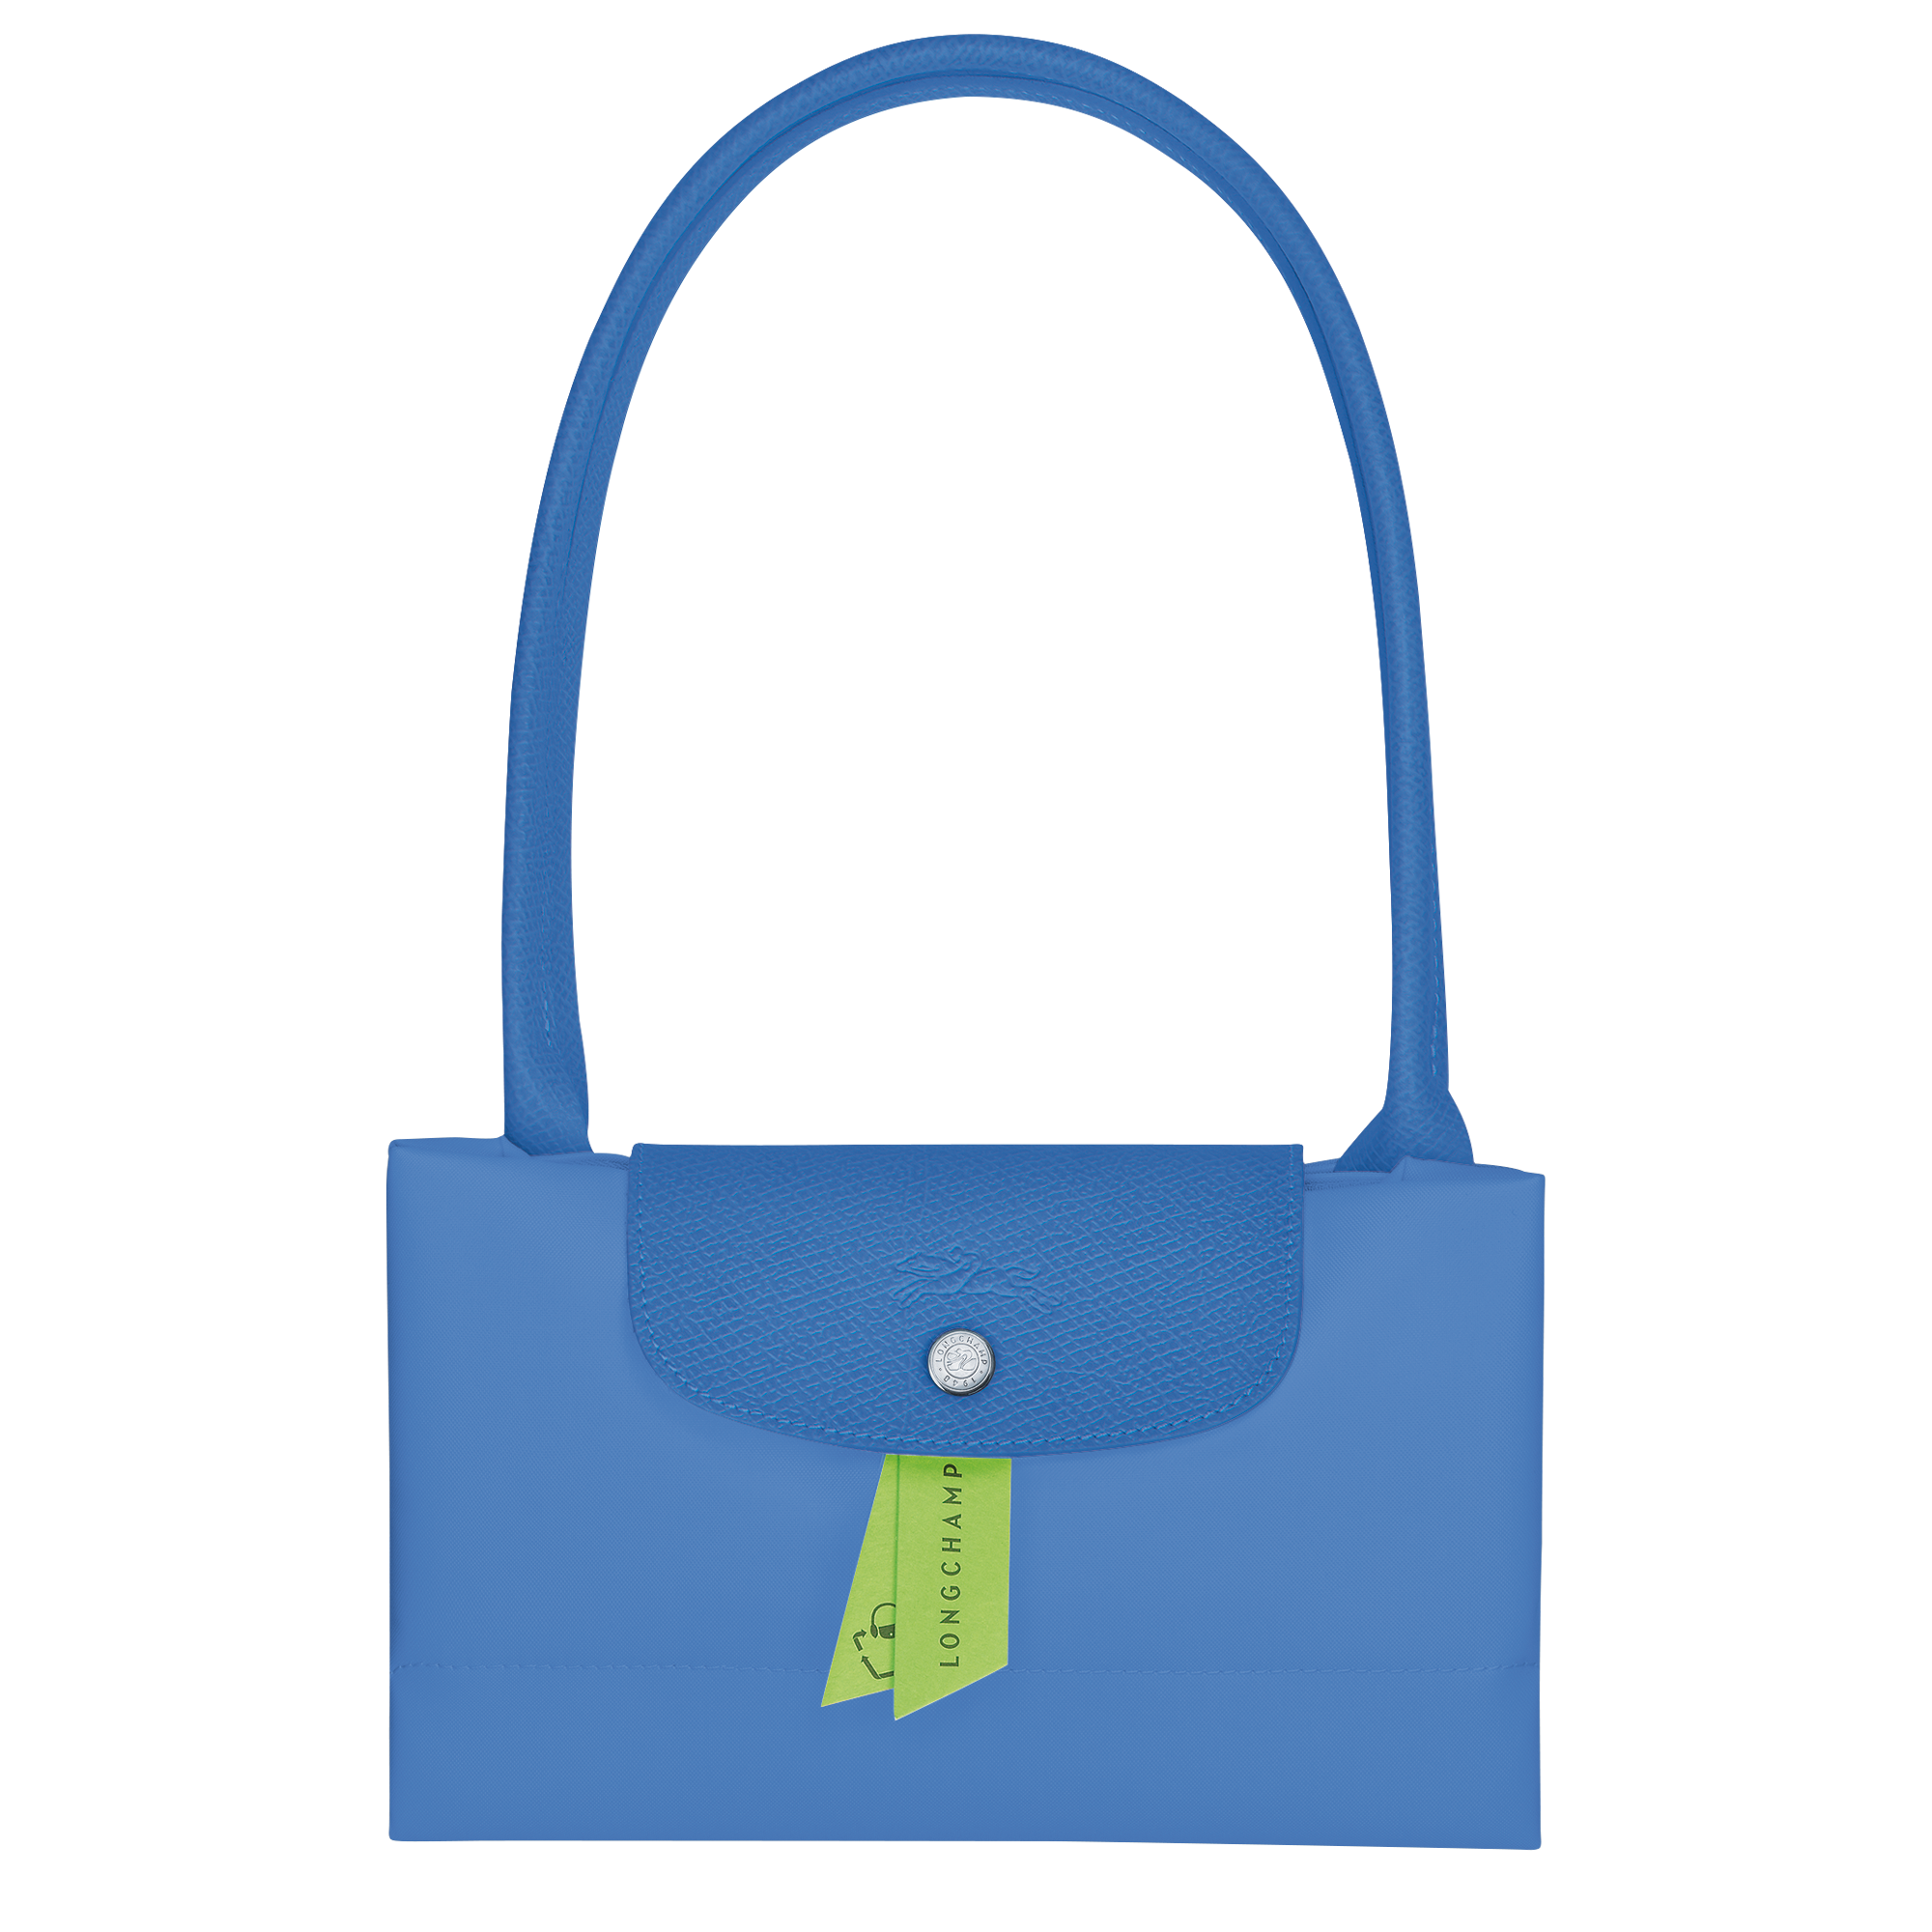 Le Pliage Green Tote bag L, Cornflower